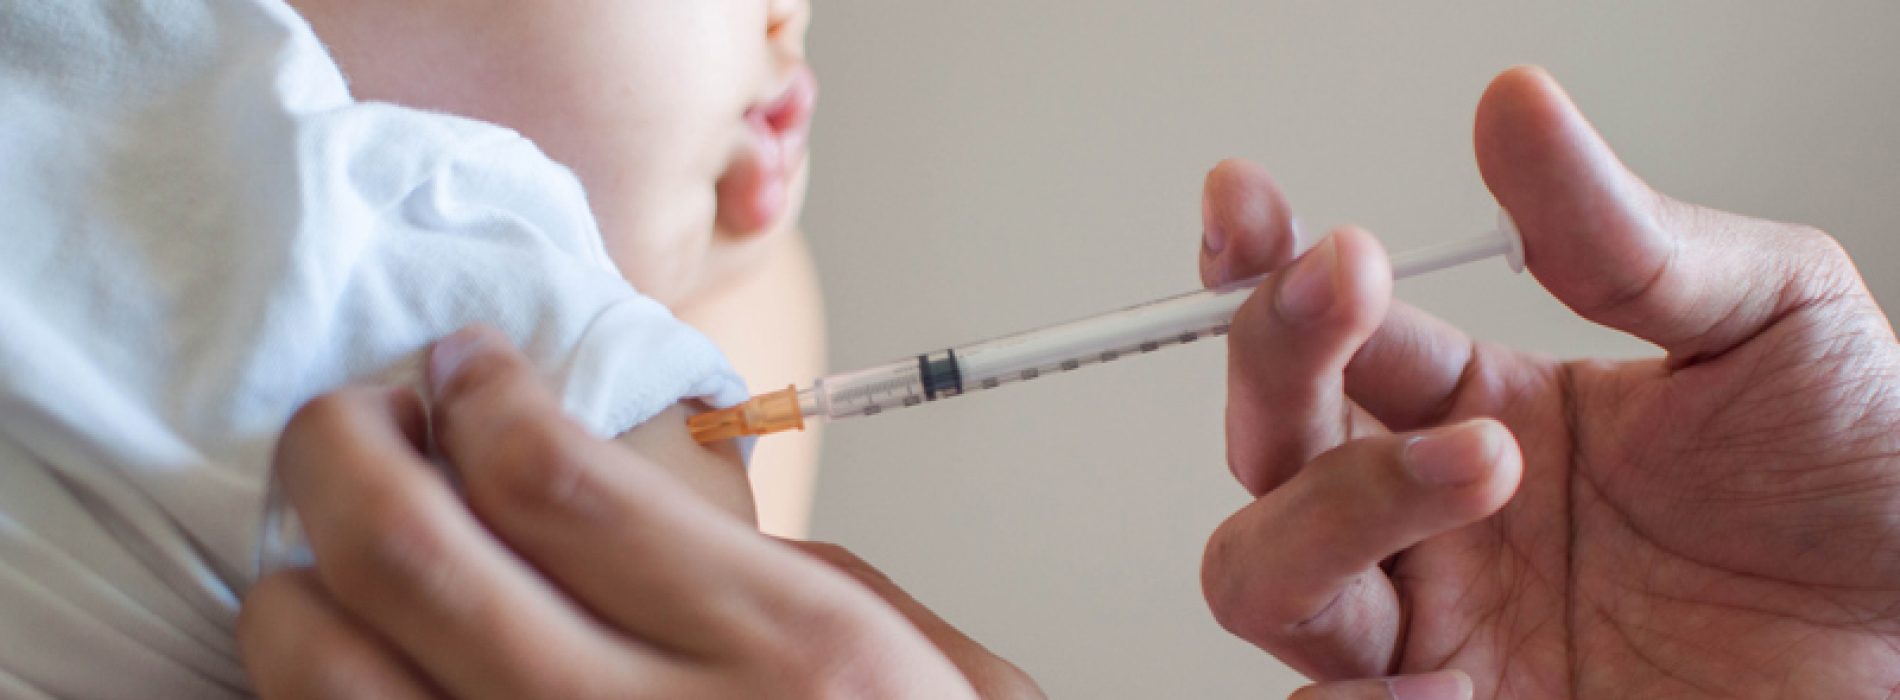 Vaccinatie Schandaal: gelekt vertrouwelijk document onthuld 36 baby’s dood na dit vaccin!